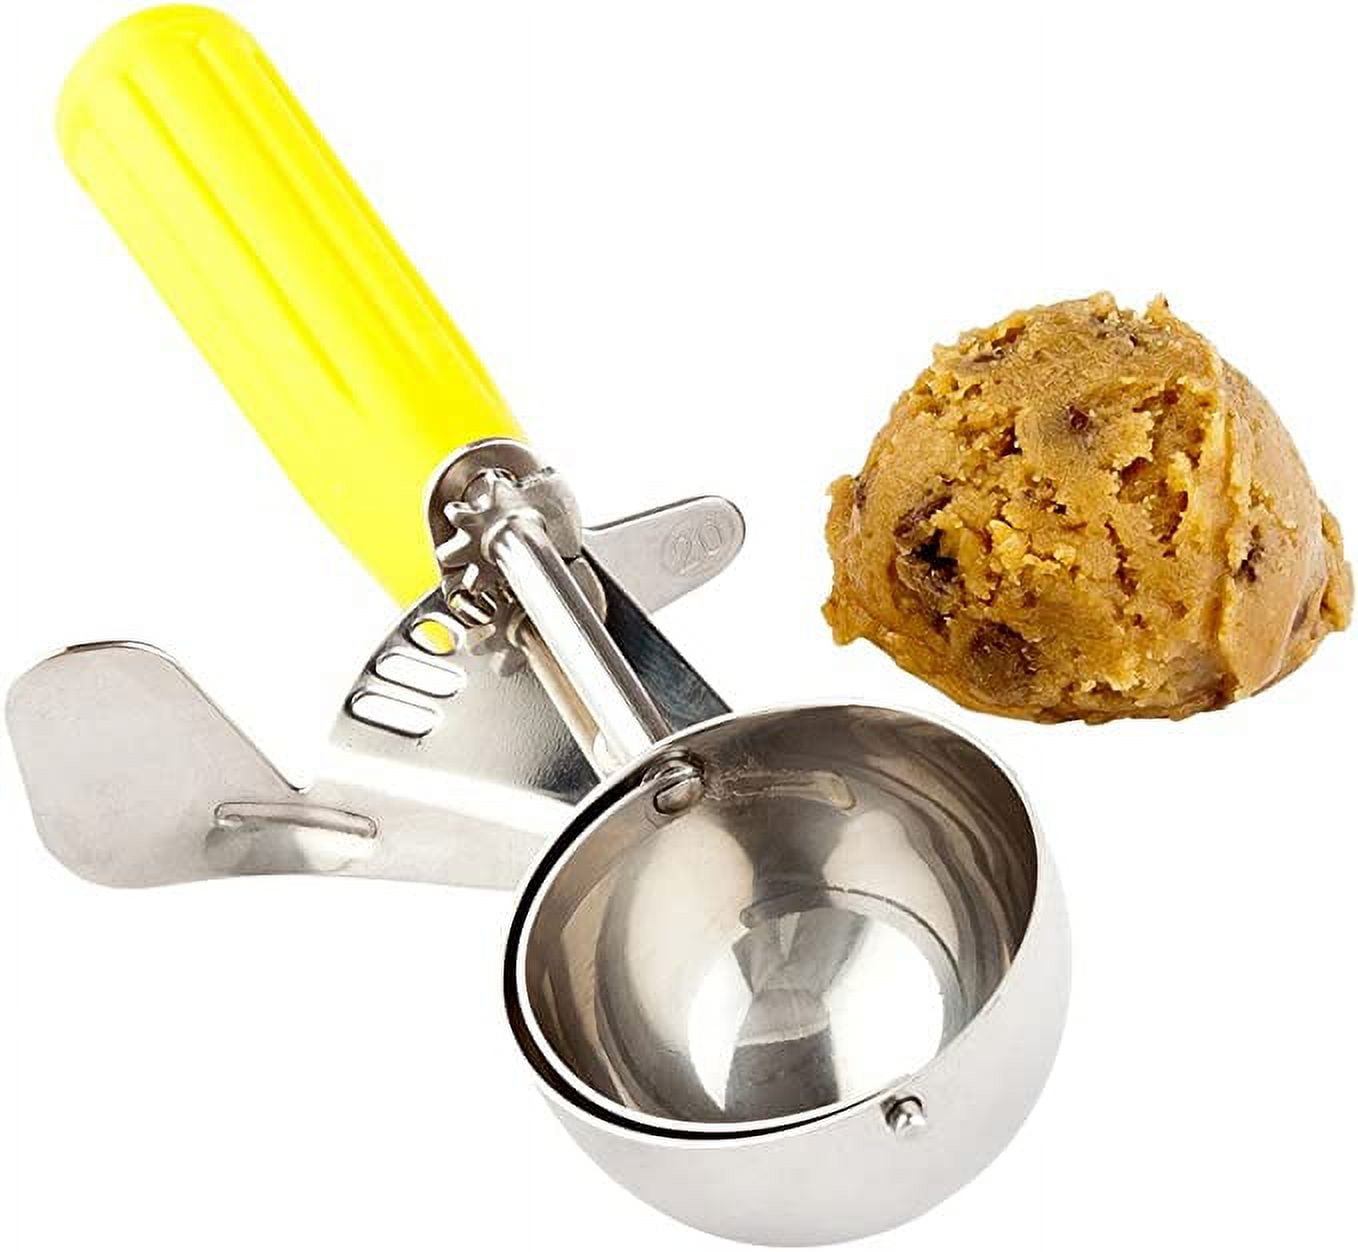  Portion Scoop - #20 (1.52 oz) - Disher Scoop, Cookie